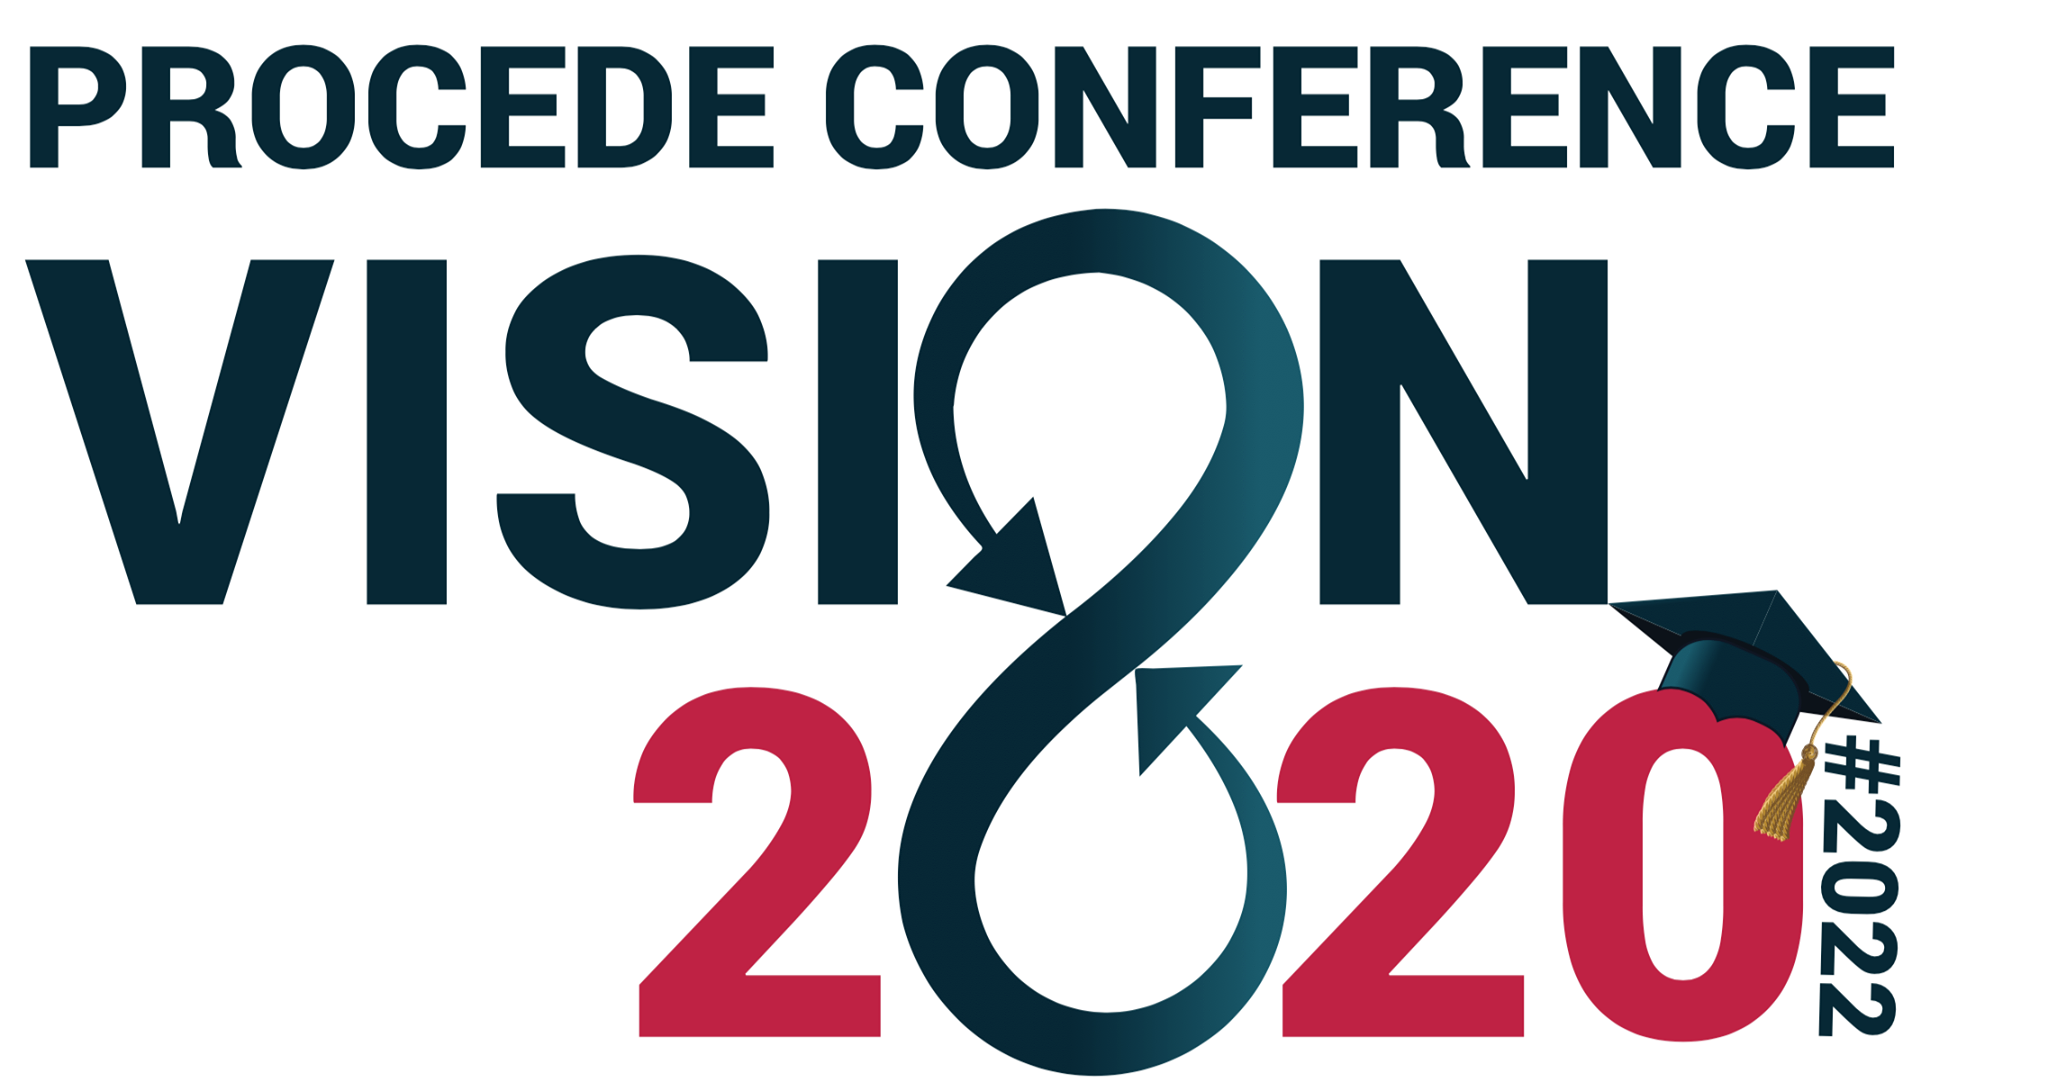 PROCEDE Conference 2022 - details